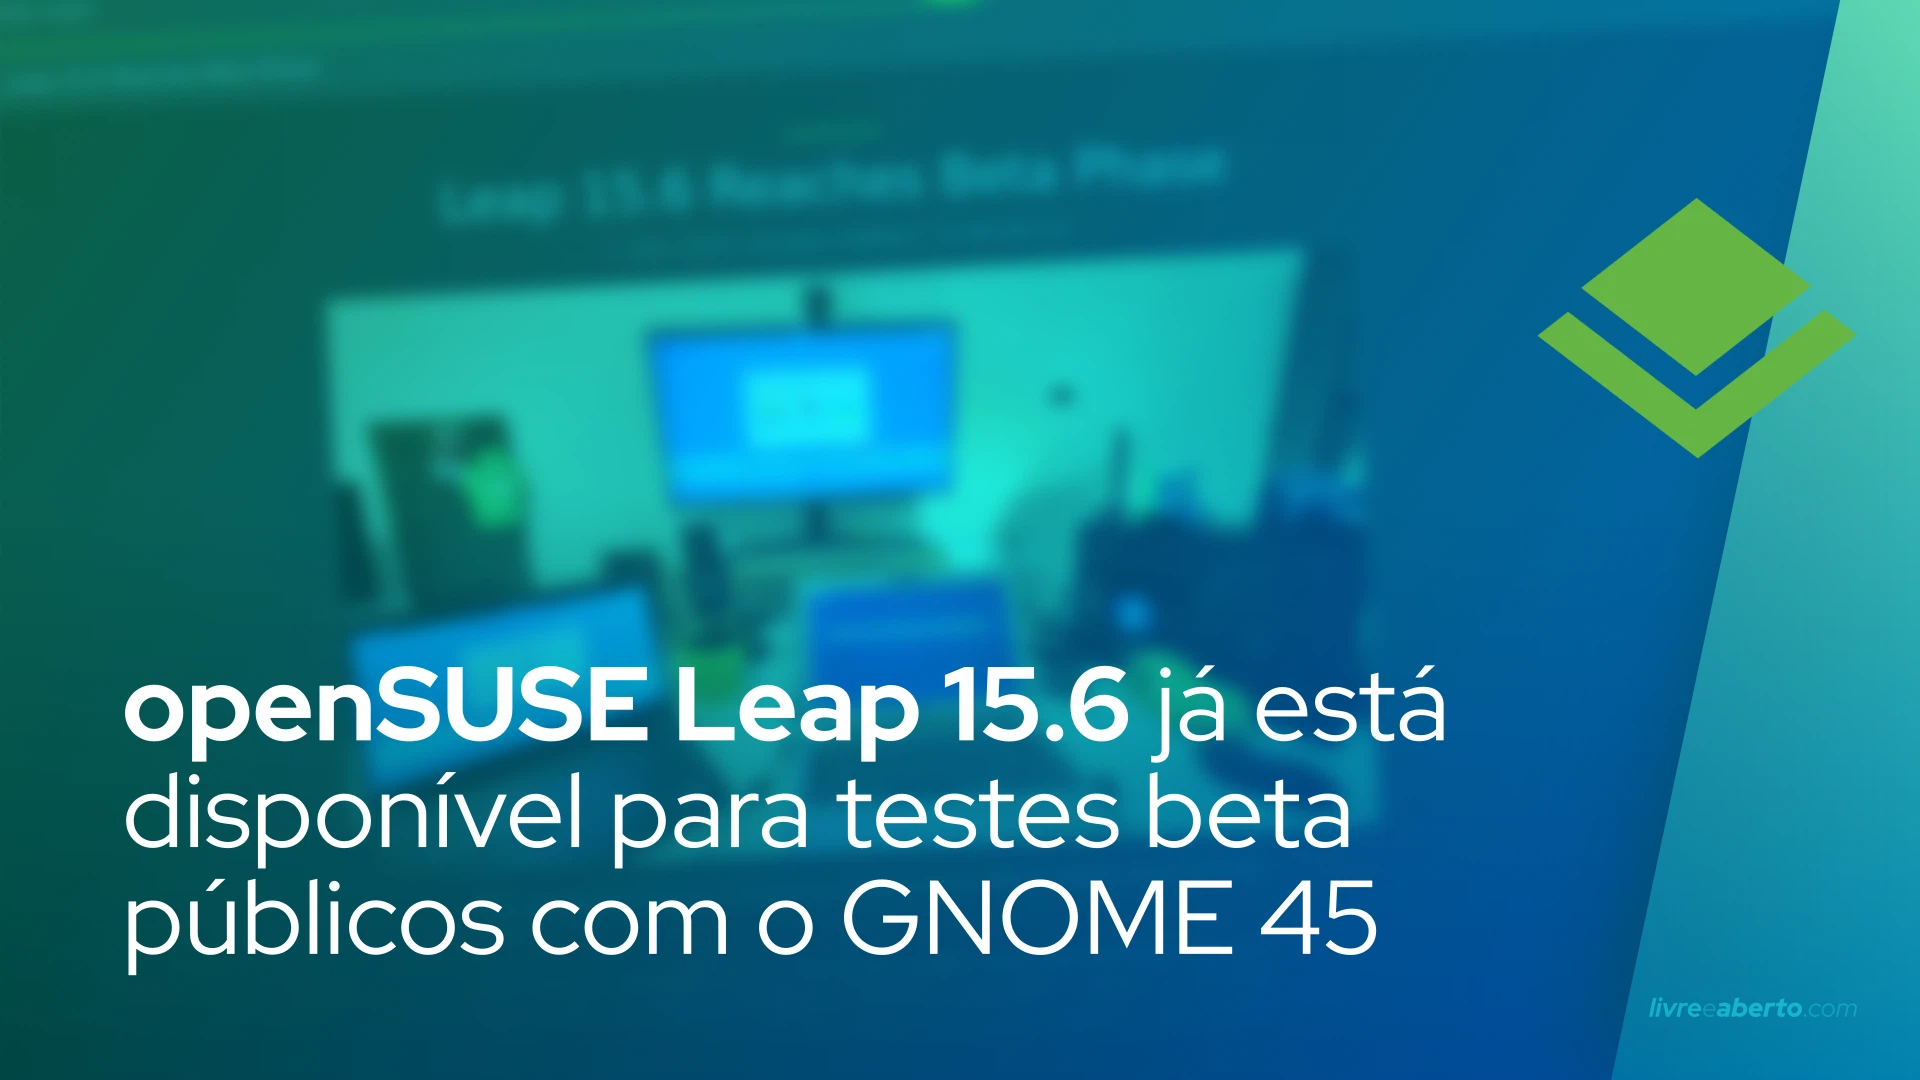 openSUSE Leap 15.6 já está disponível para testes beta públicos com o GNOME 45